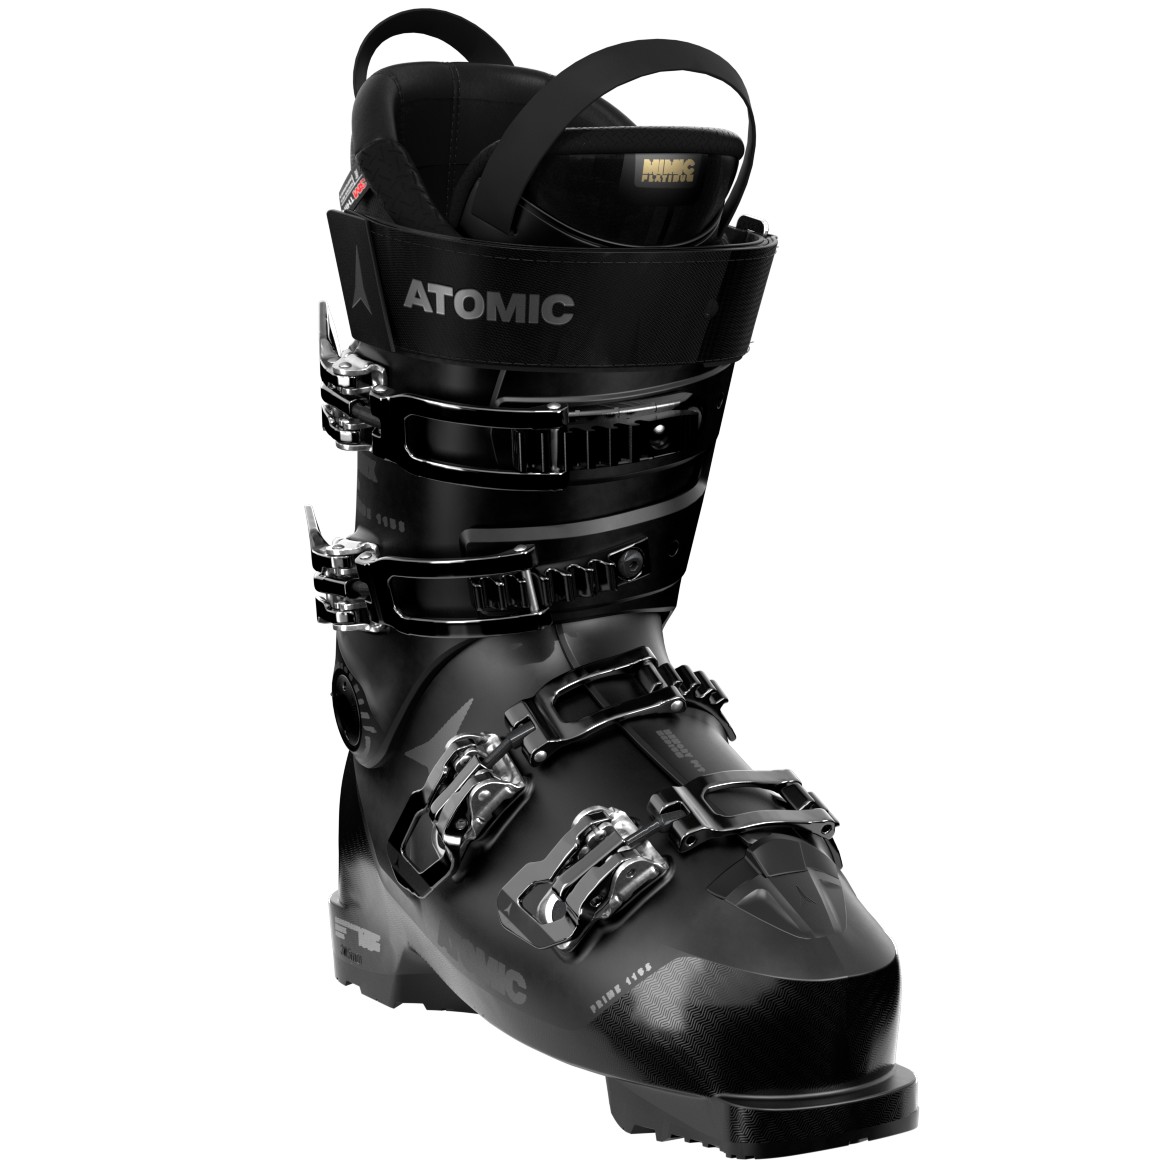 Atomic Hawx Prime 115 S W GW Women's Ski Boots